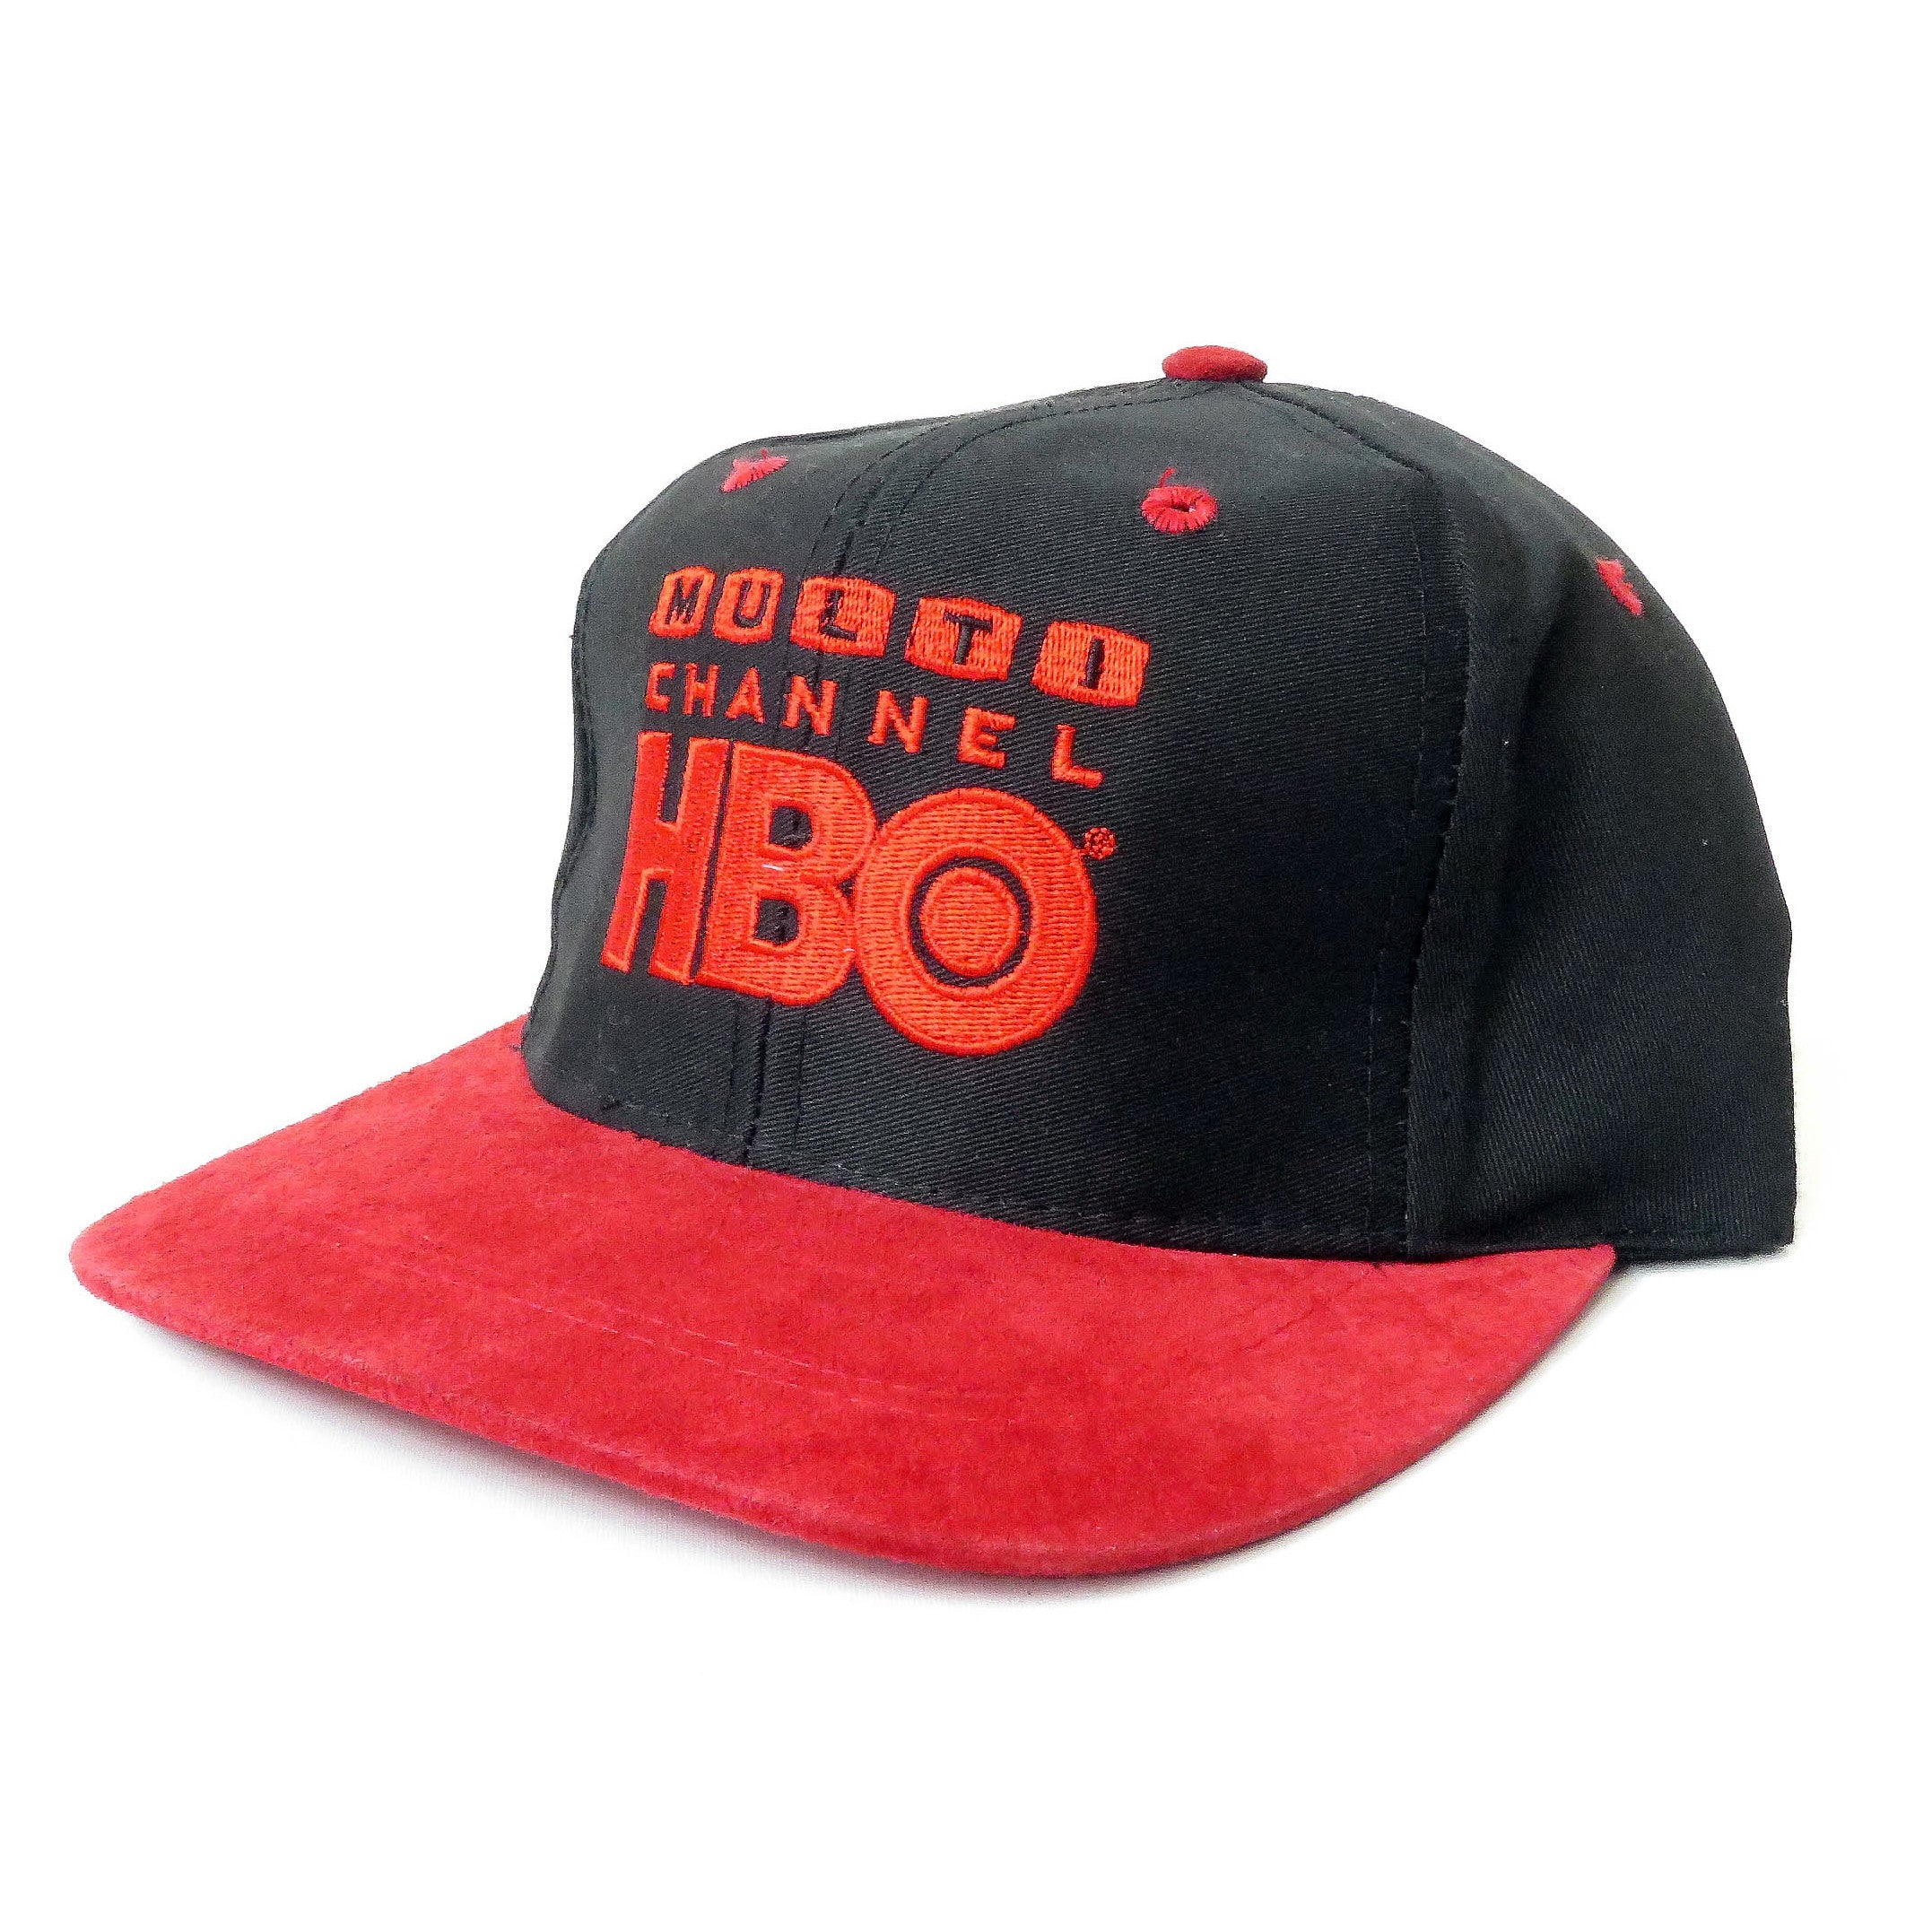 Vintage Multi Channel HBO Snapback Hat